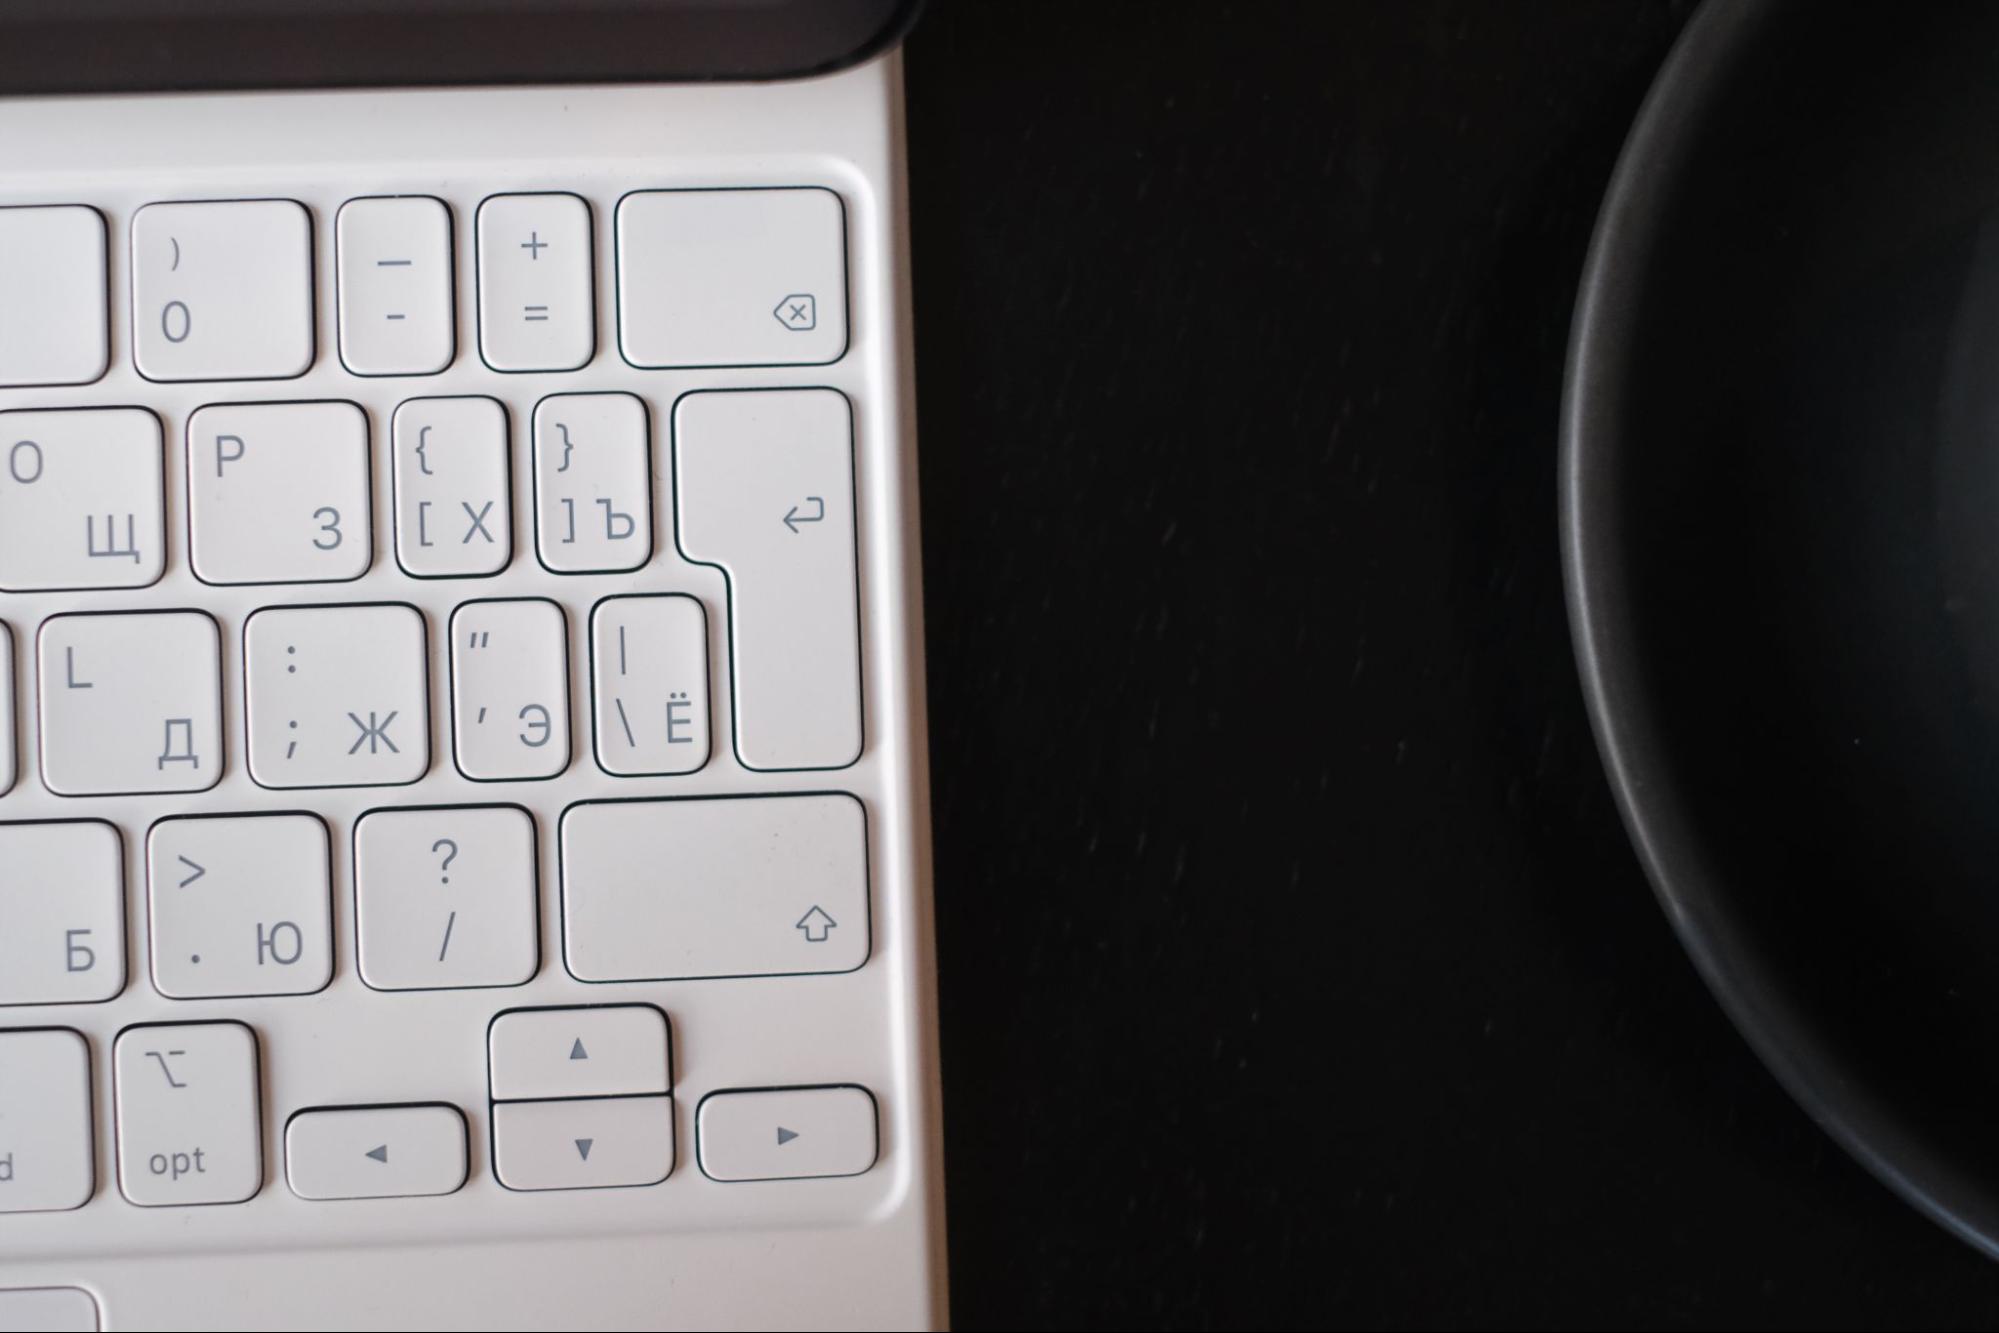 У клавиатуры Magic Keyboard справа уменьшенные клавиши, но это почему-то не мешает работать